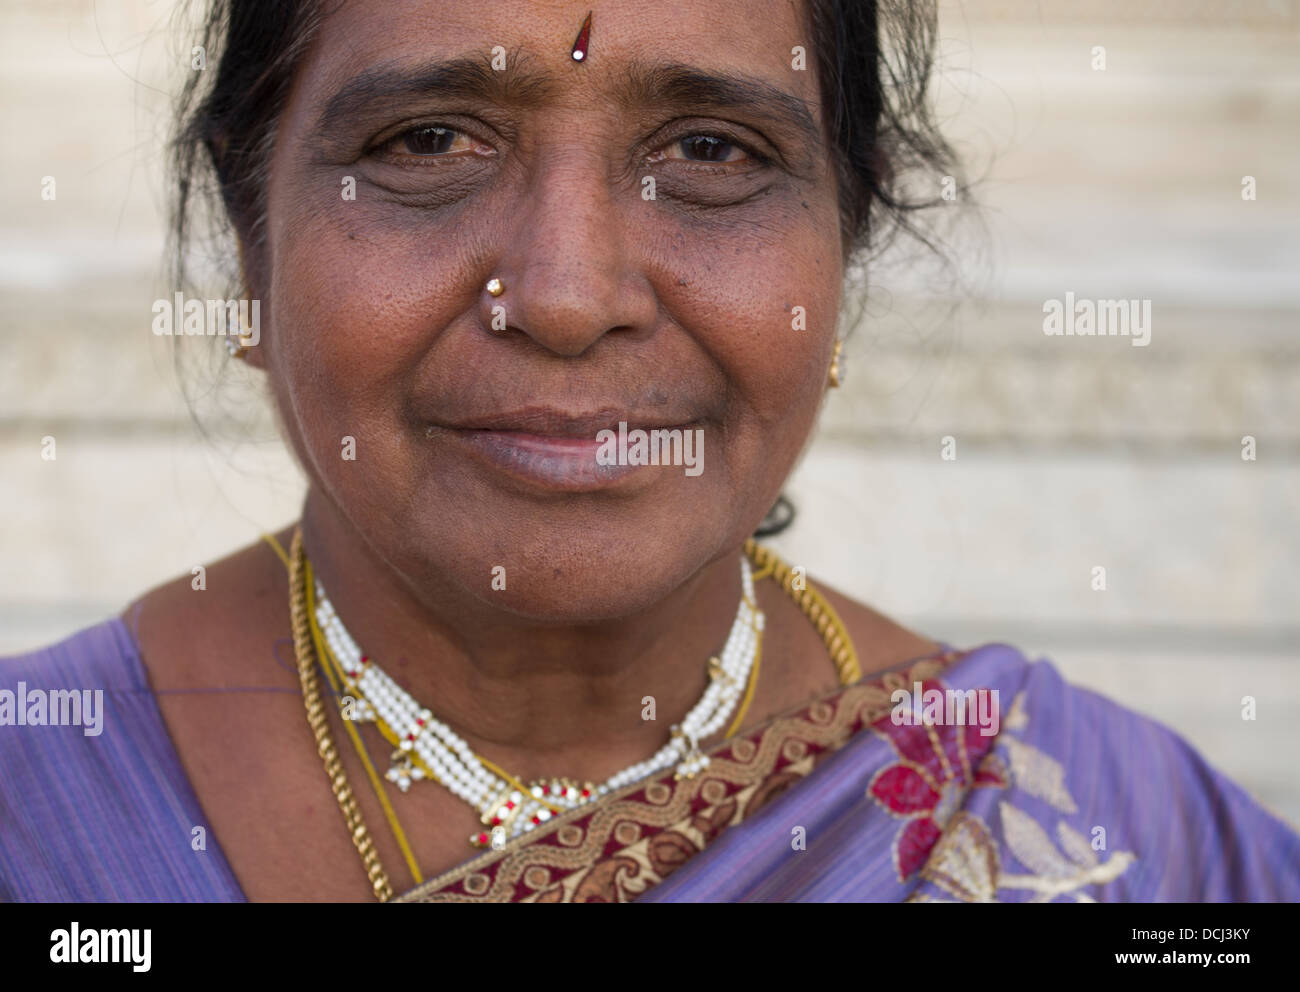 Femme indienne visiter Taj Mahal, mausolée de marbre blanc - Agra, Inde Banque D'Images